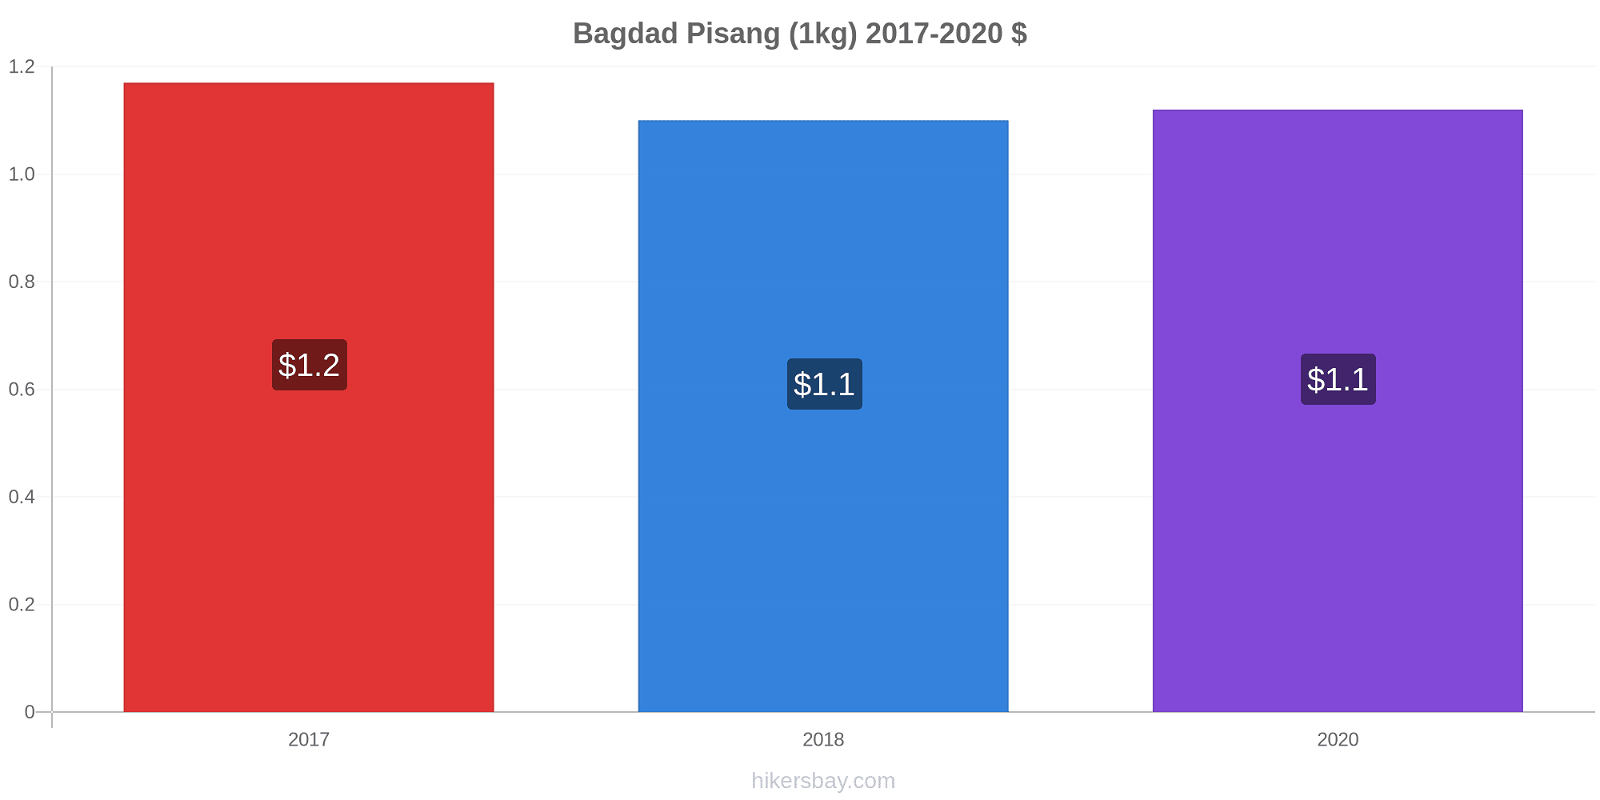 Bagdad perubahan harga Pisang (1kg) hikersbay.com